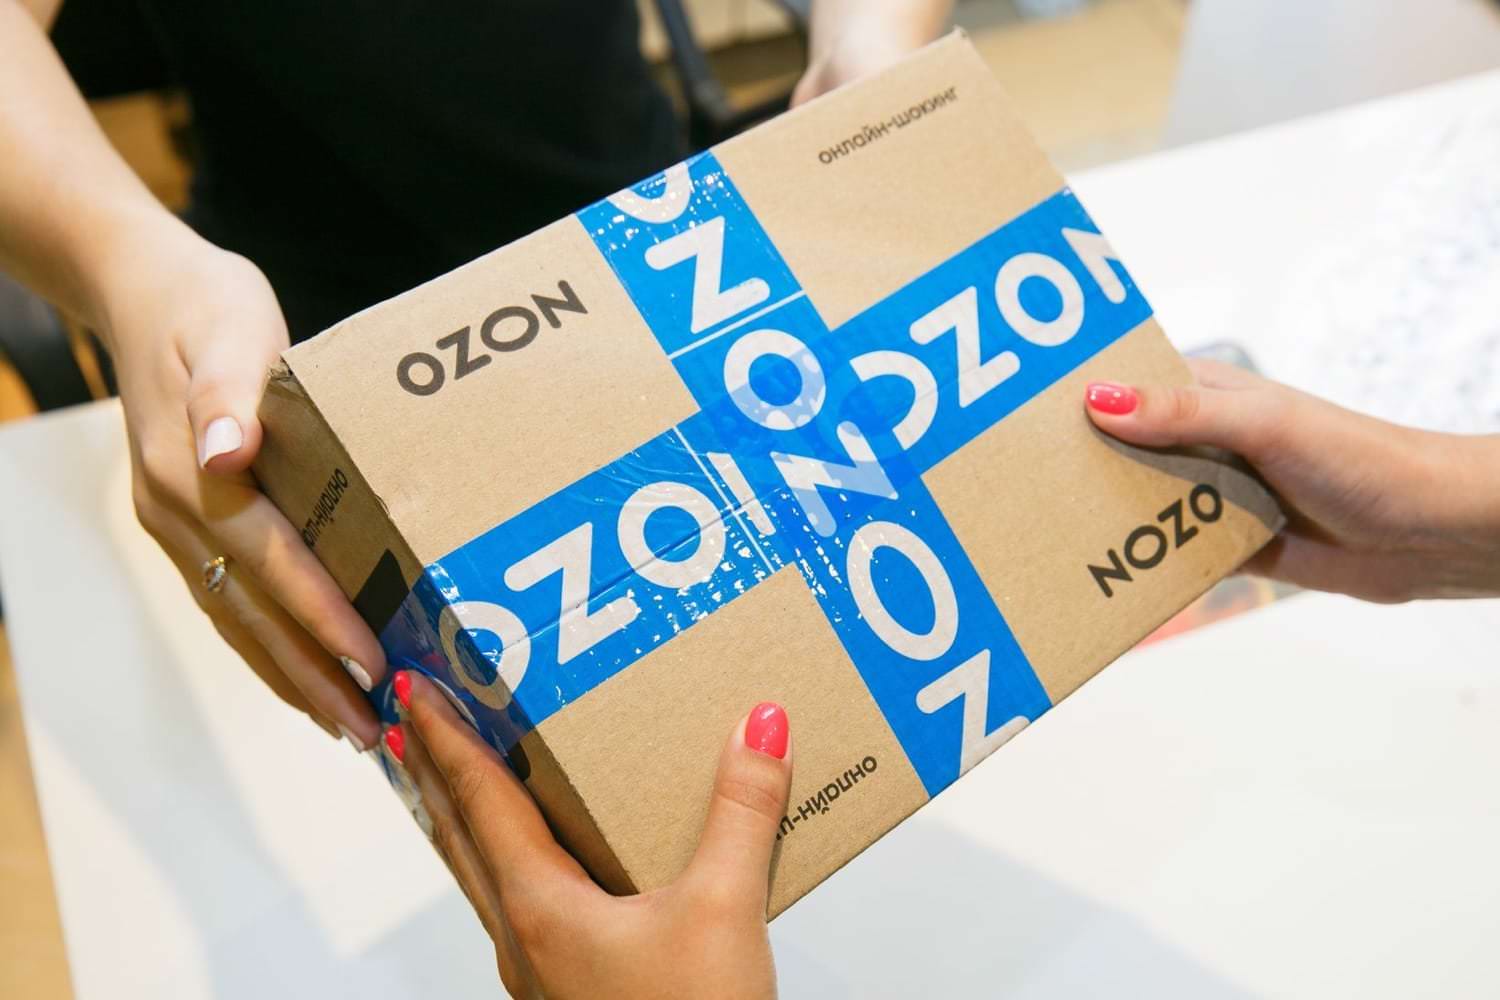 Ozon Интернет Магазин Купить